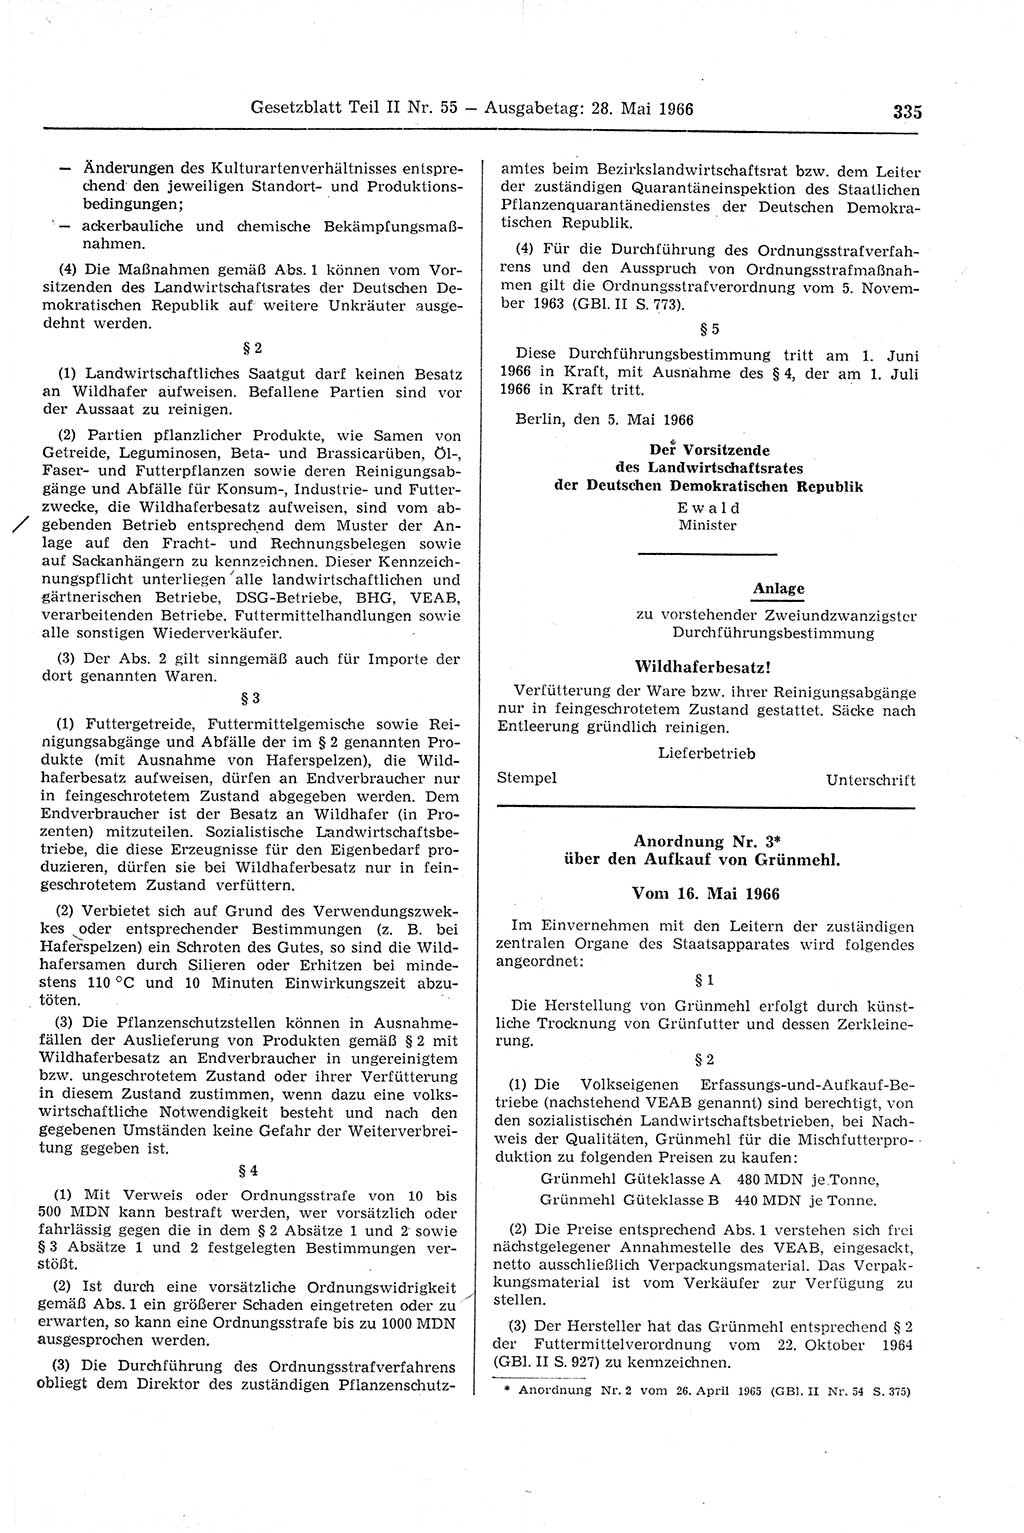 Gesetzblatt (GBl.) der Deutschen Demokratischen Republik (DDR) Teil ⅠⅠ 1966, Seite 335 (GBl. DDR ⅠⅠ 1966, S. 335)